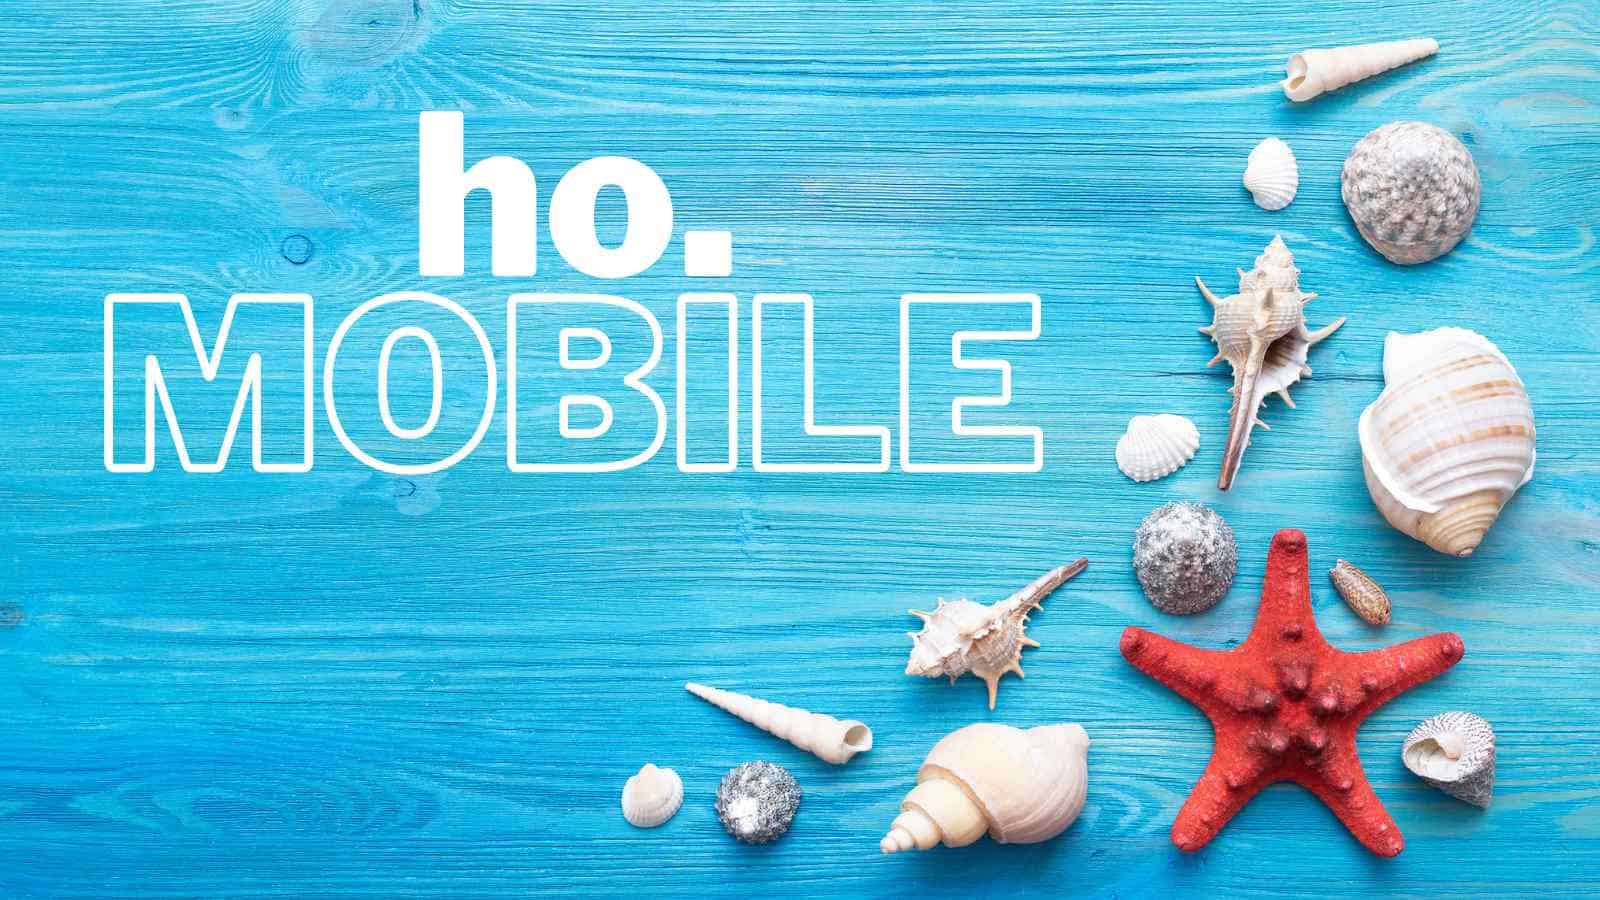 Le incredibili offerte Ho. Mobile sulla rete 4G, a partire da 6.99 euro al mese 150 GB di traffico mobile e minuti ed SMS illimitati.